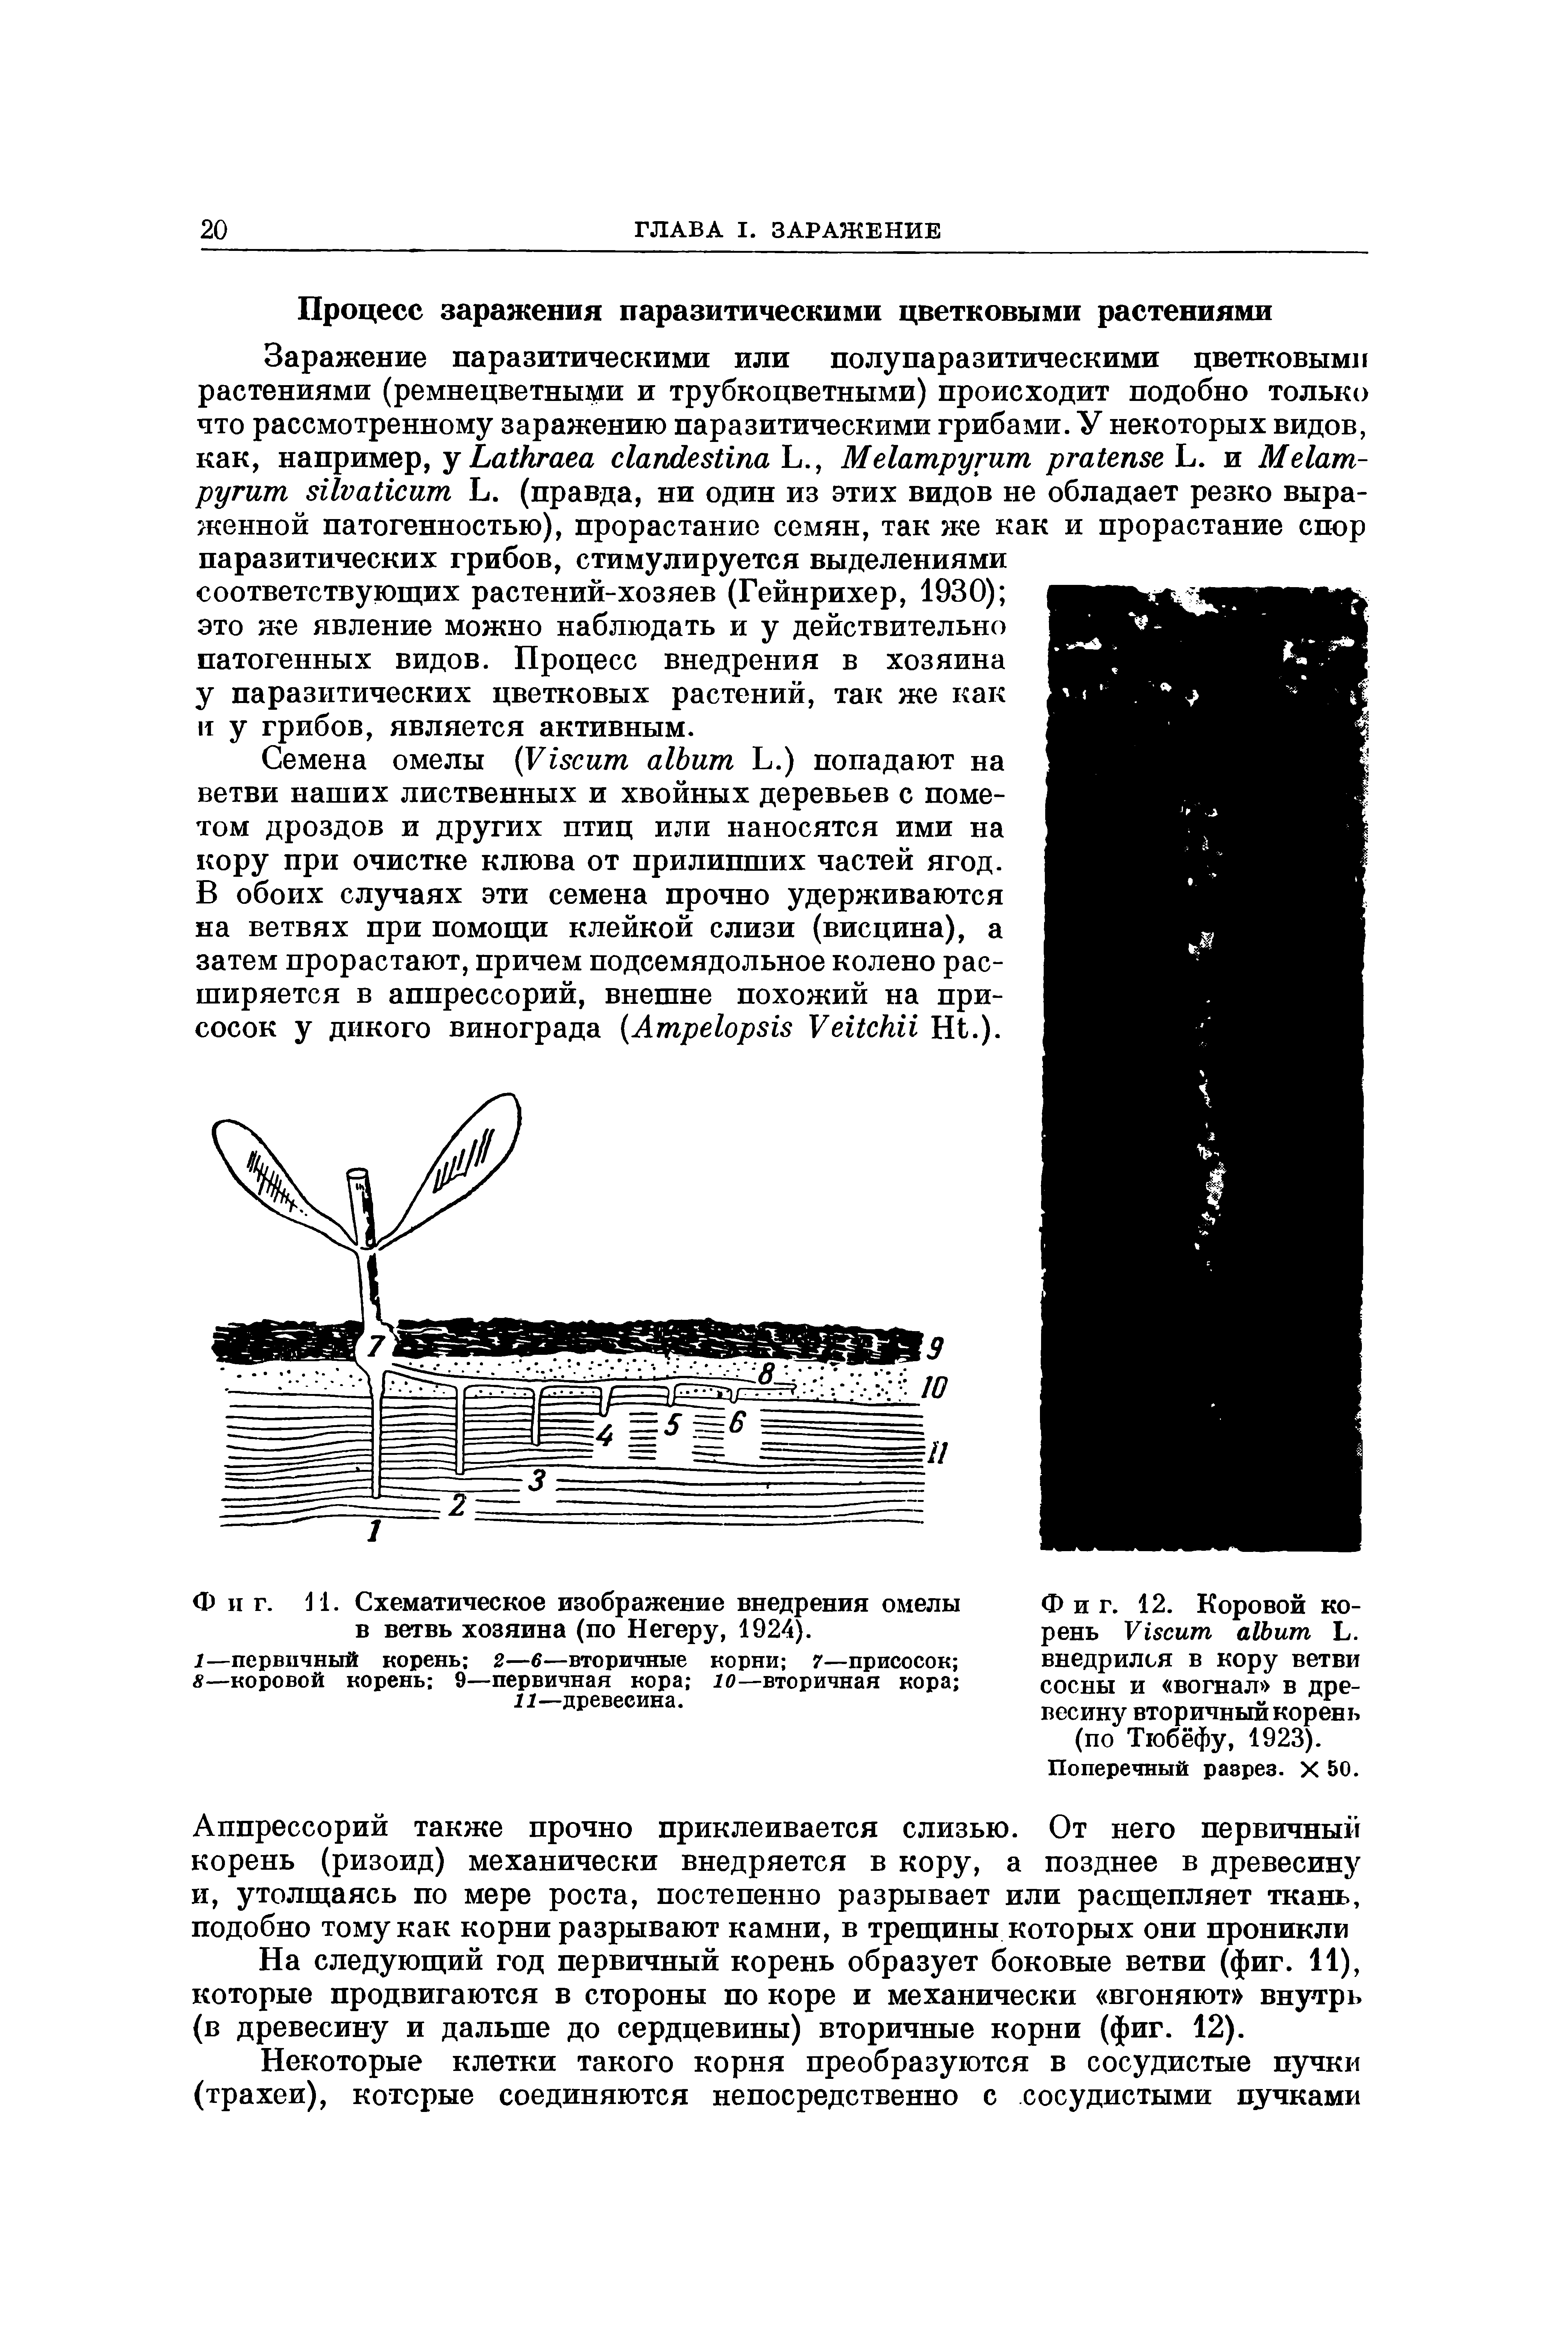 Фиг. 12. Коровой корень V L. внедрился в кору ветви сосны и вогнал в древесину вторичный корень (по Тюбёфу, 1923).